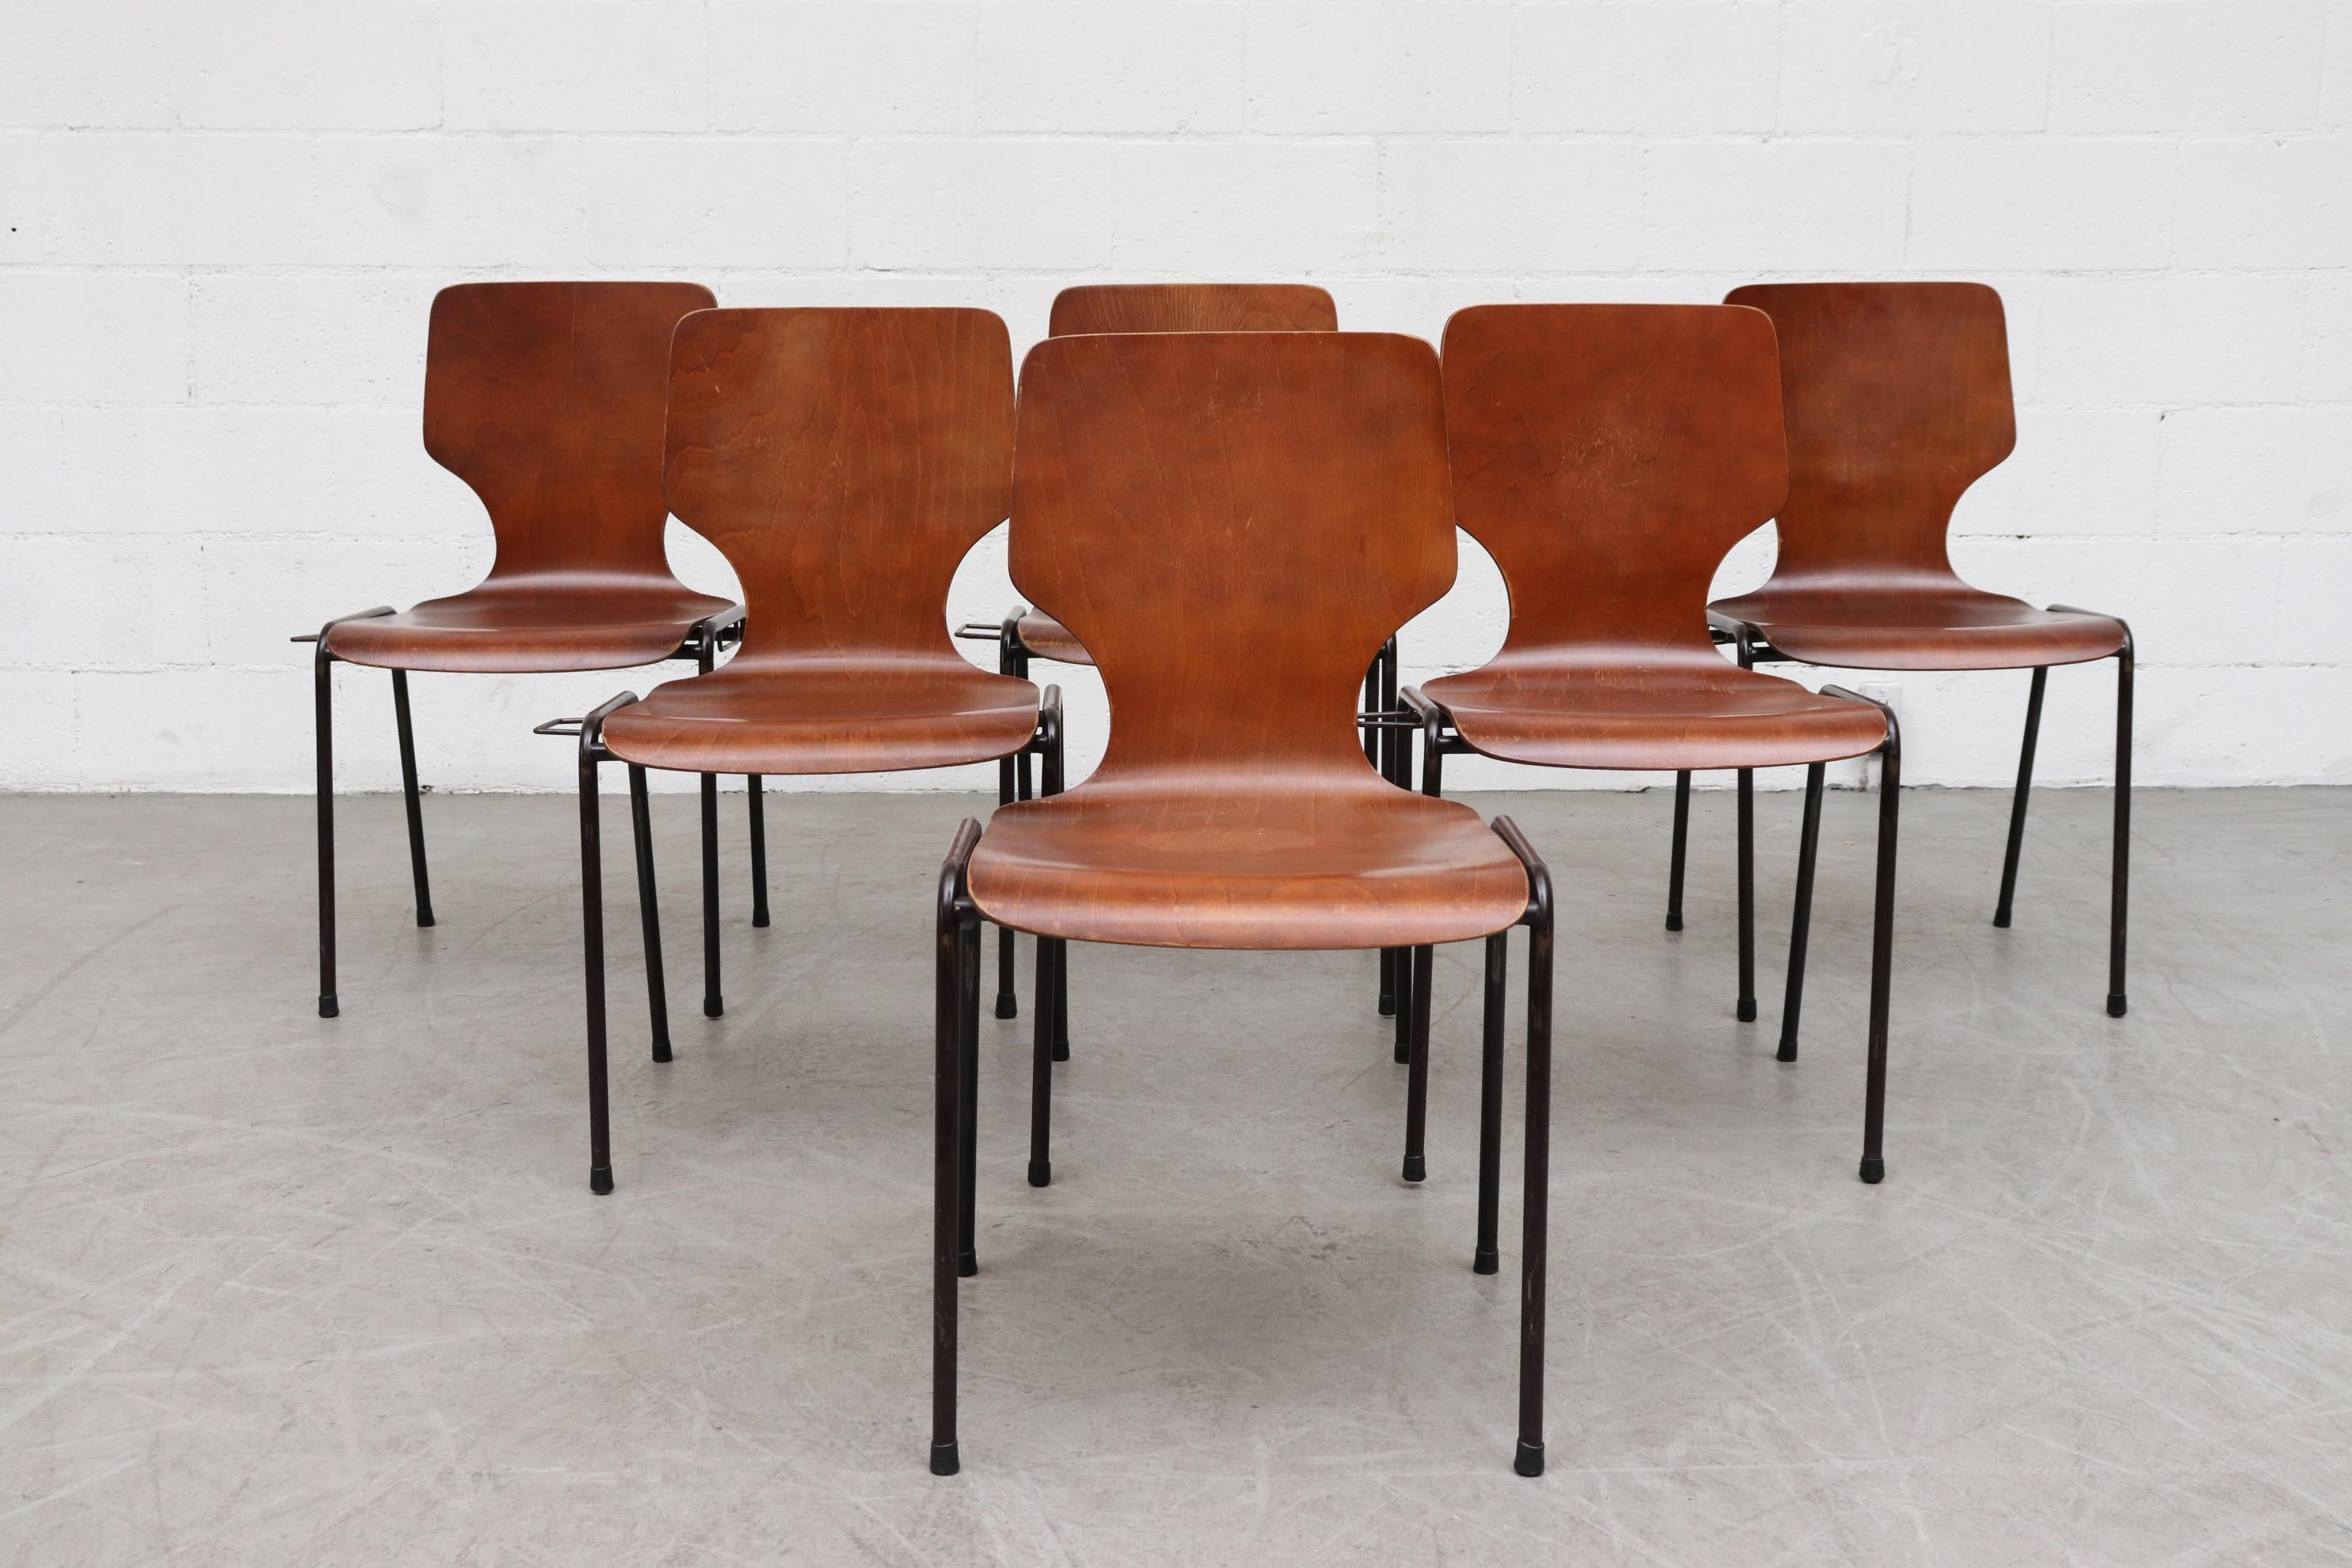 Chaises empilables de style papillon de Fritz Hansen en teck ton sur ton. Assise en coquille joliment incurvée avec structure tubulaire en métal émaillé. Les chaises peuvent s'imbriquer les unes dans les autres pour créer une rangée stationnaire. En